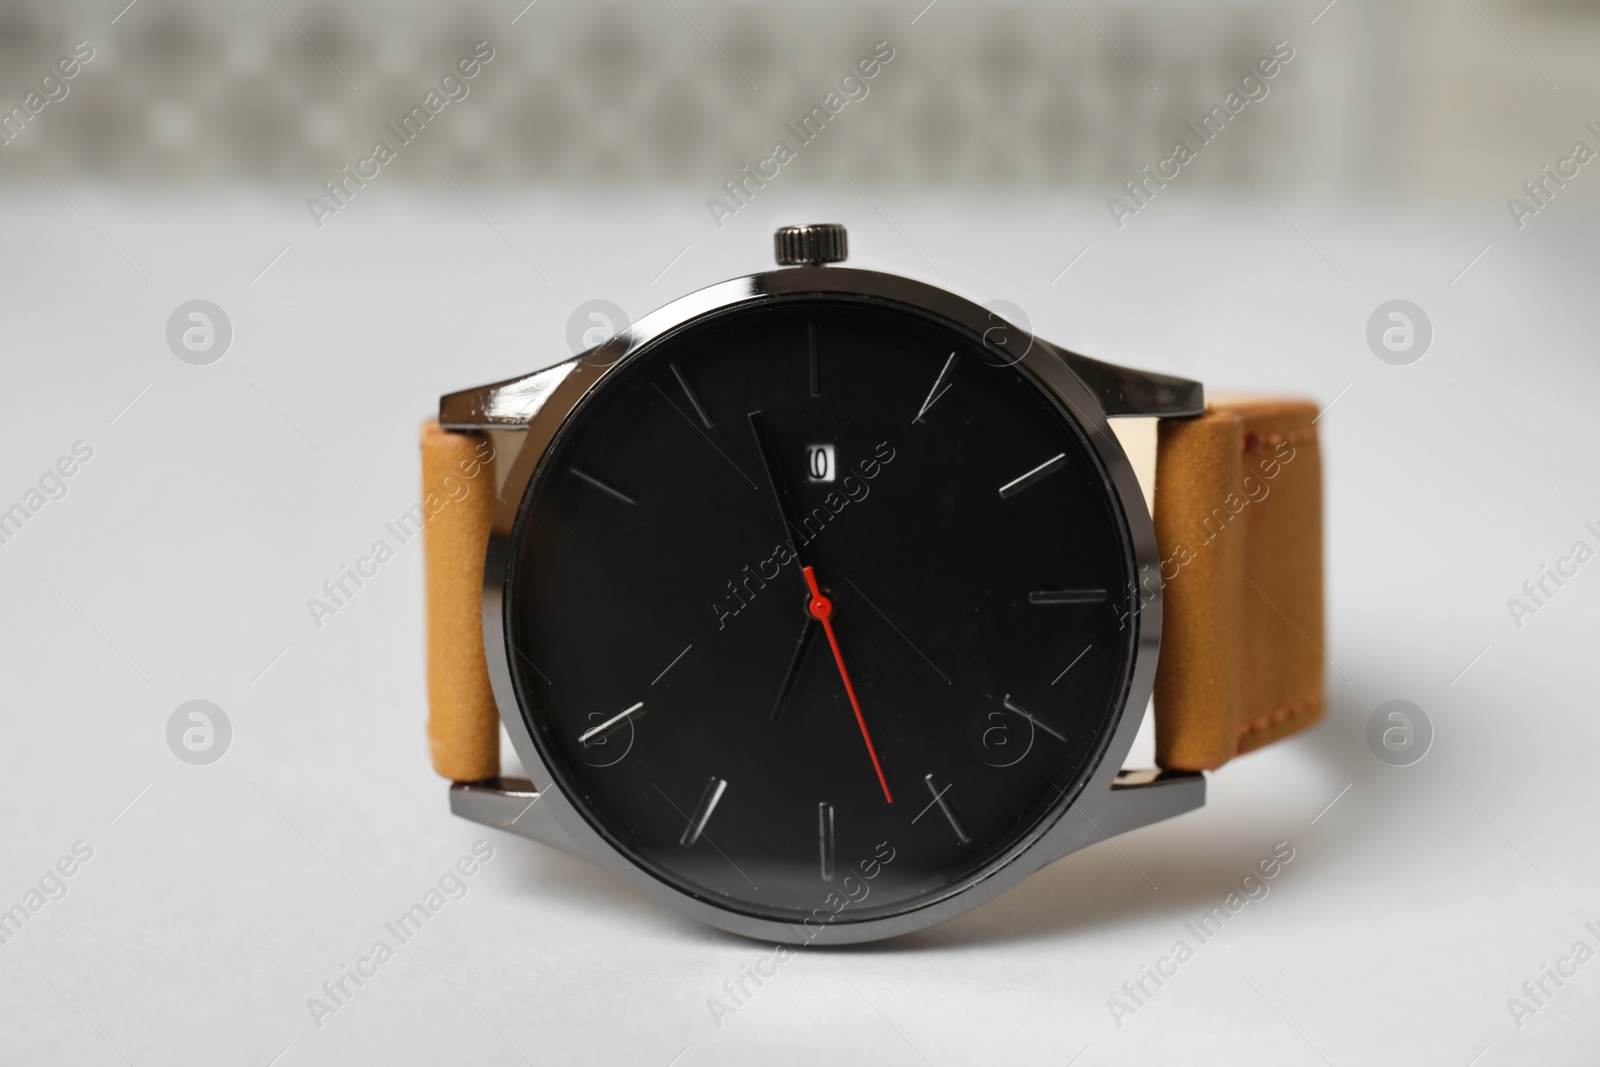 Photo of Stylish wrist watch on table. Fashion accessory